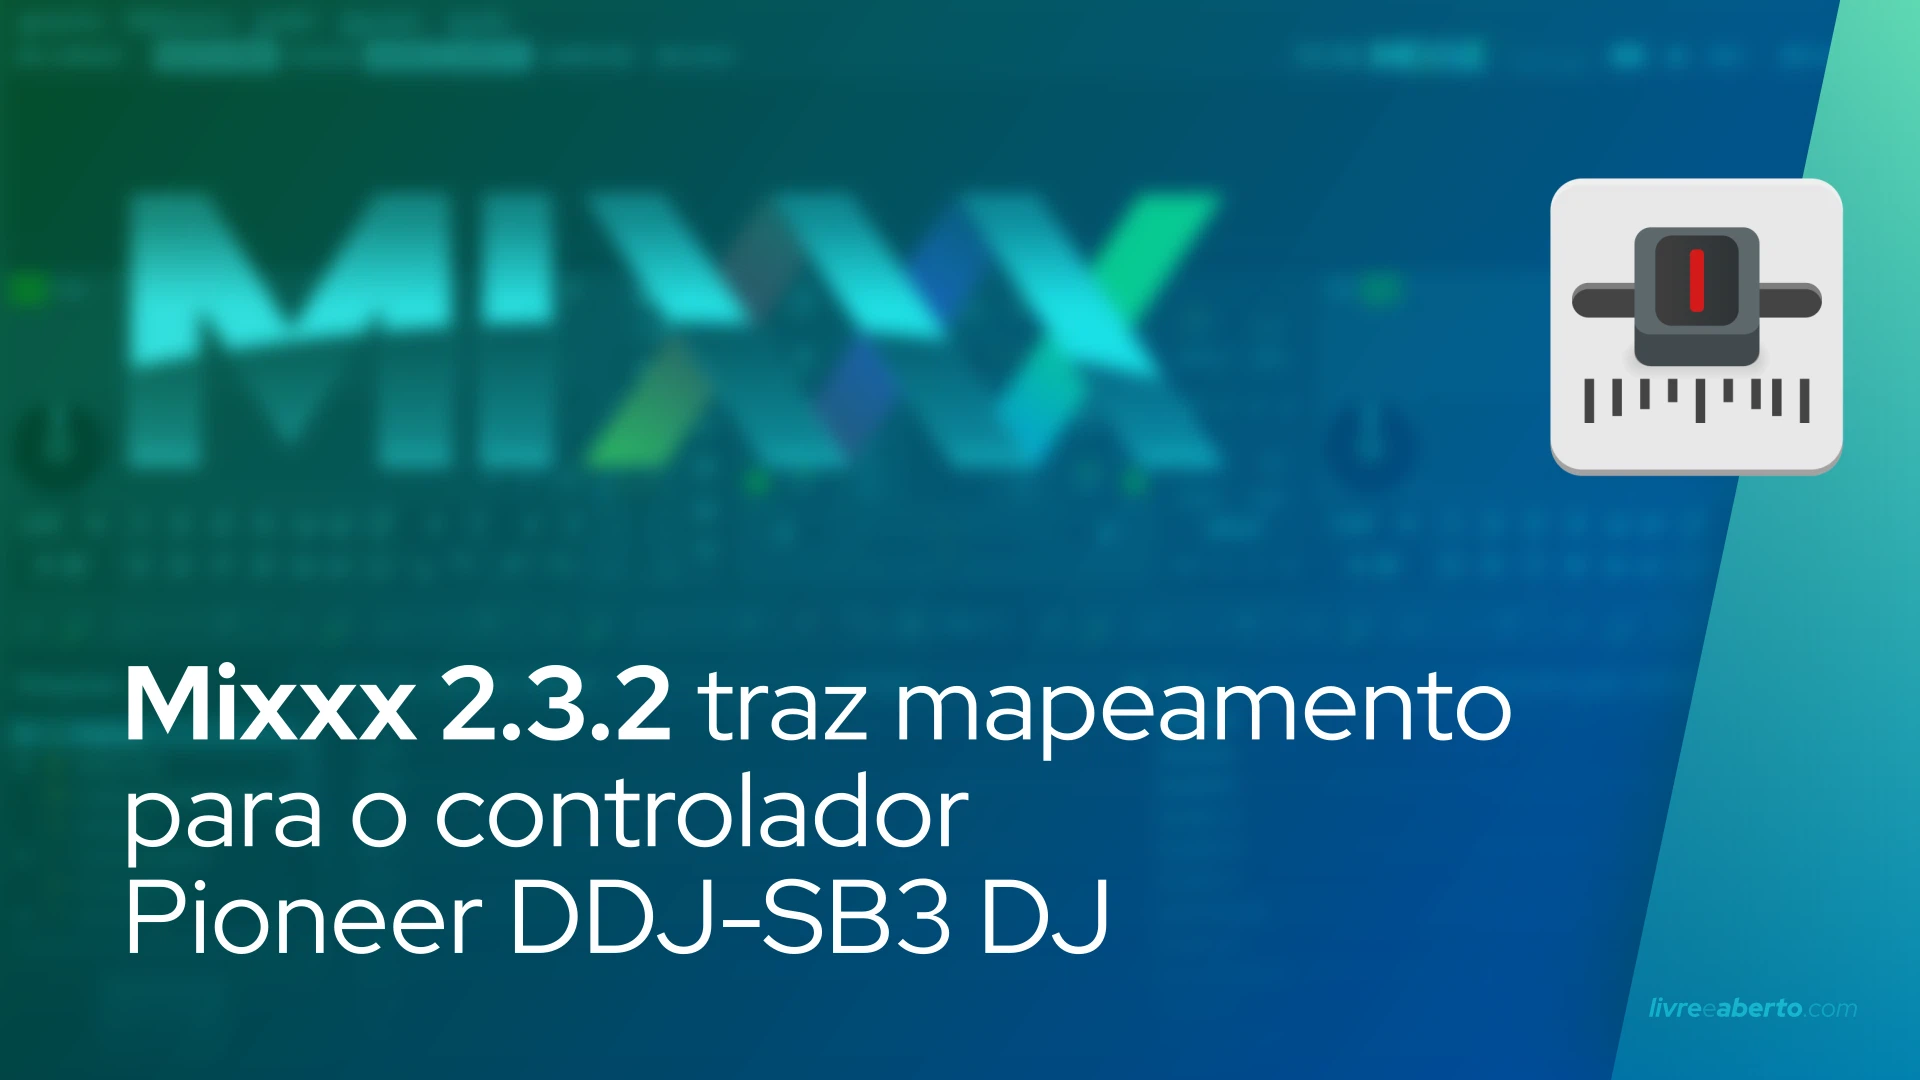 Mixxx 2.3.2 adiciona mapeamento para o controlador Pioneer DDJ-SB3 DJ